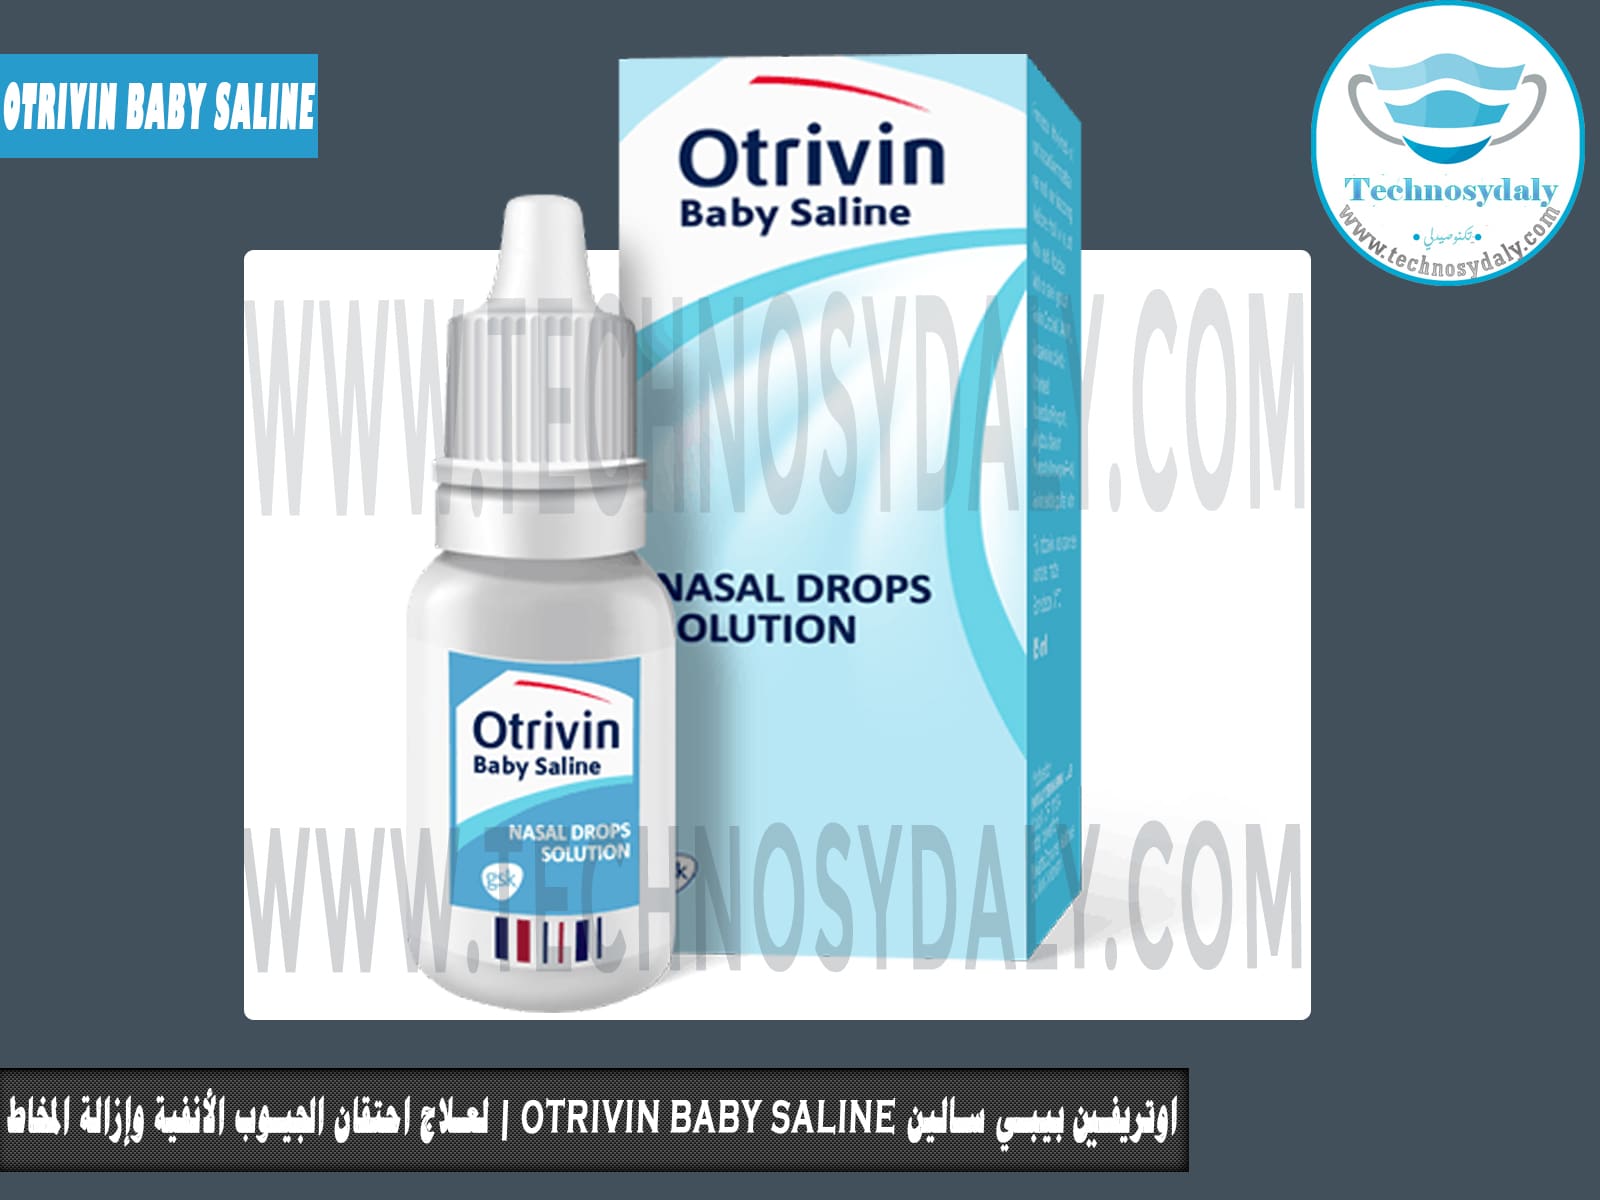 اوتريفين بيبي سالین otrivin baby saline | لعلاج احتقان الجيوب الأنفية وإزالة المخاط